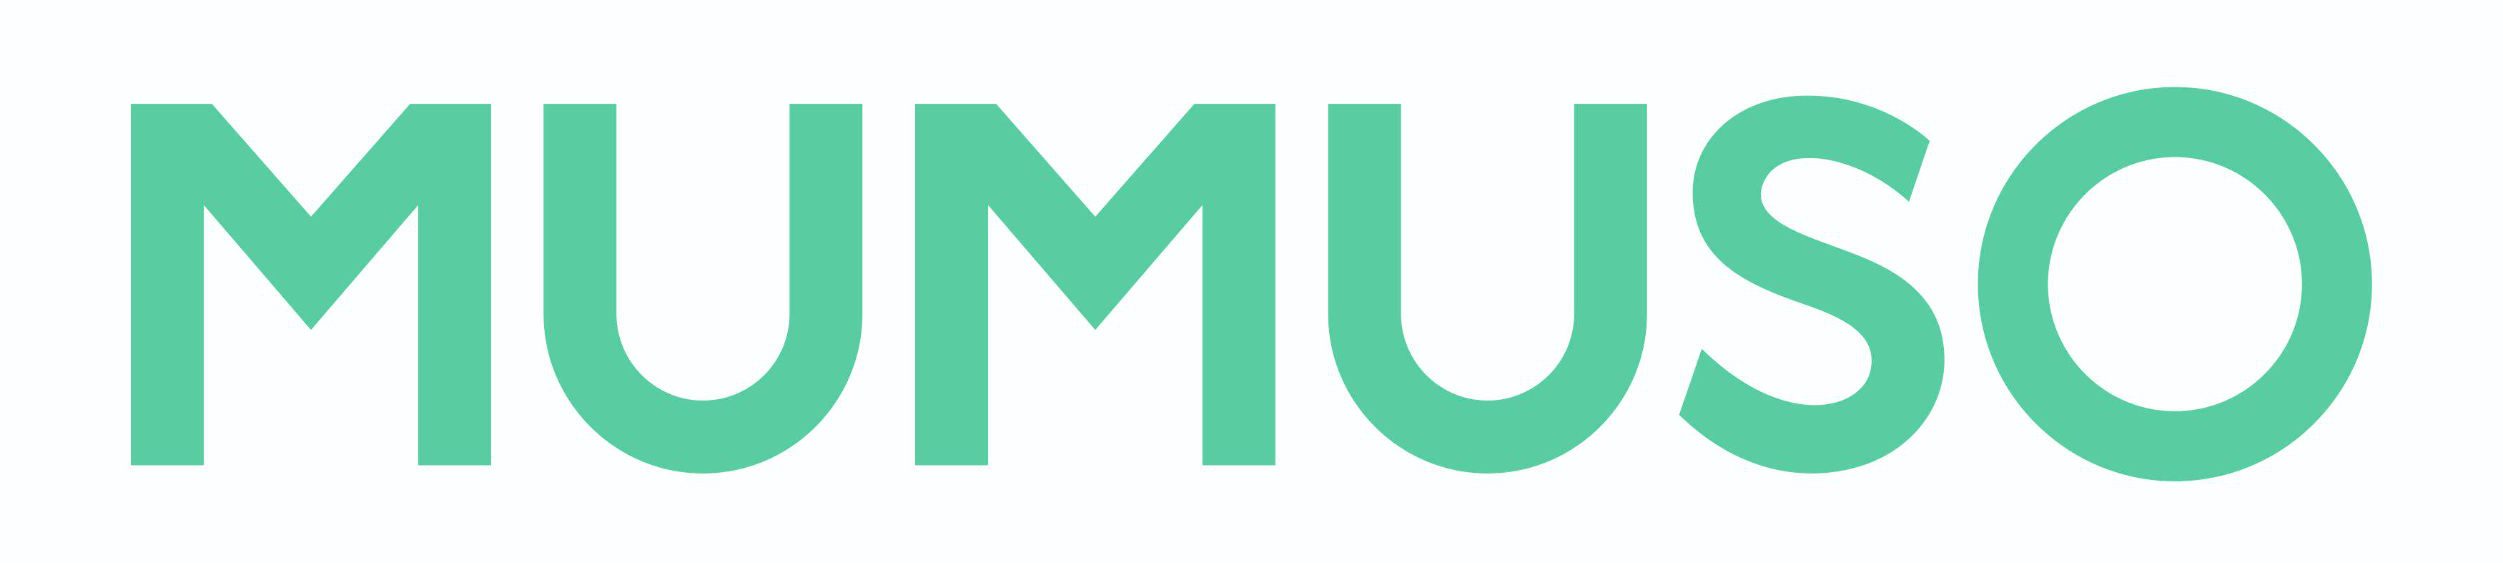 Mumuso brand logo Malad